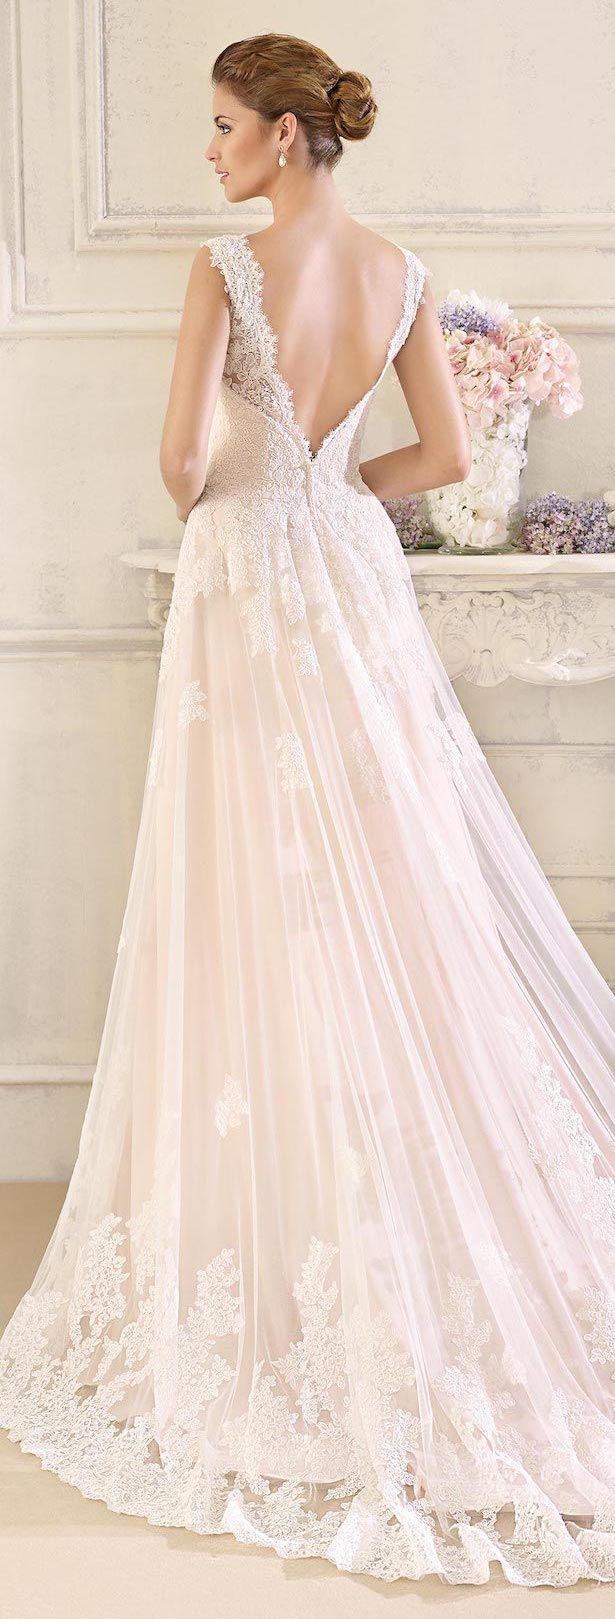 Hochzeit - Wedding Dresses By Fara Sposa 2017 Bridal Collection